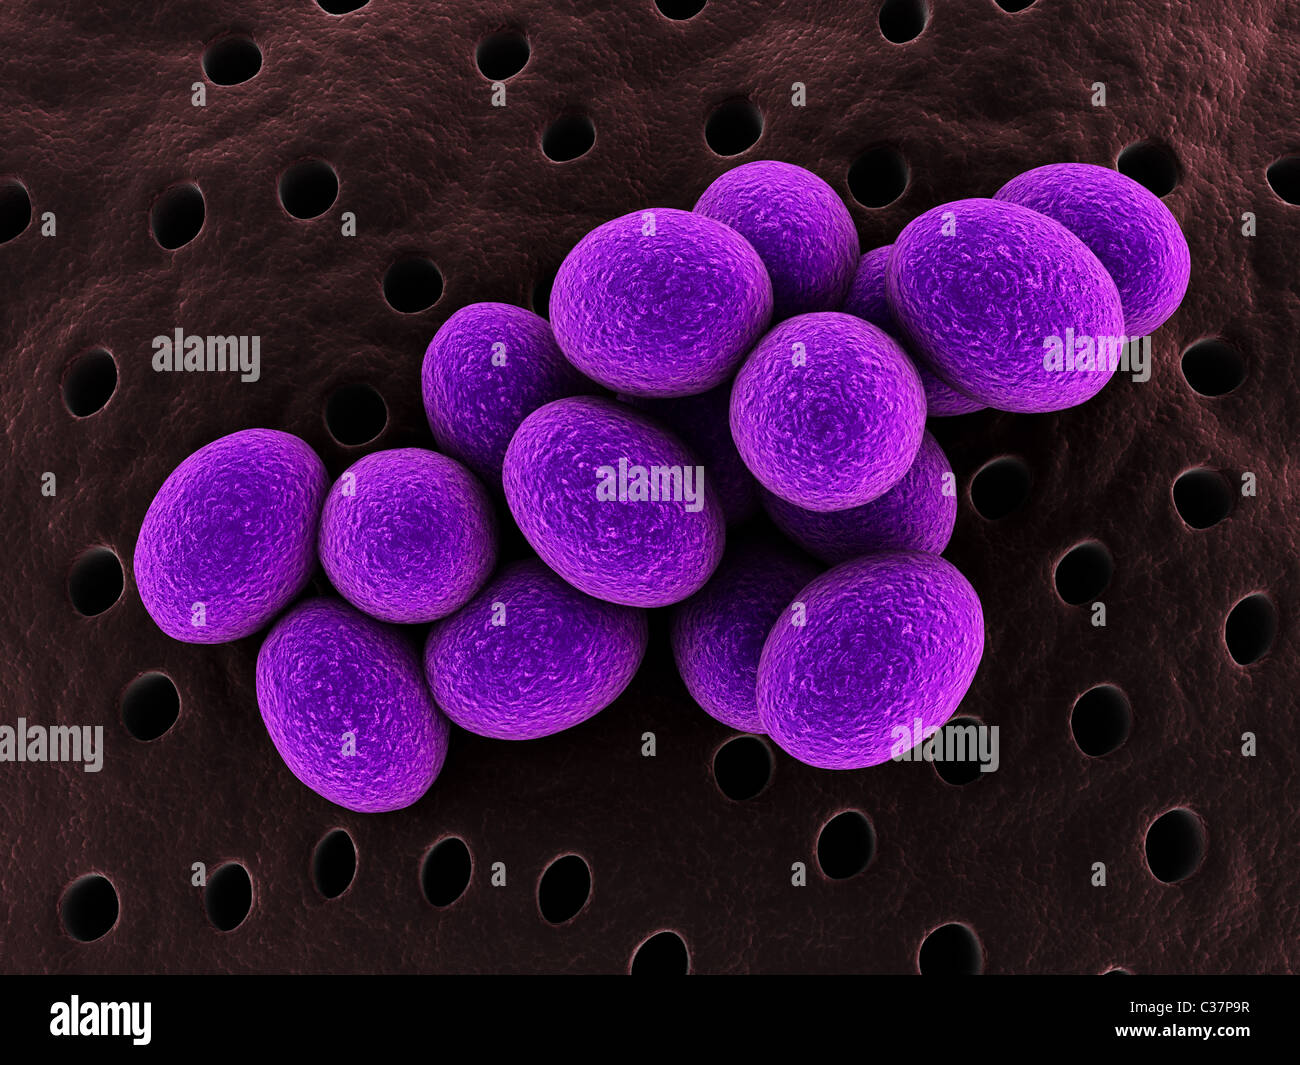 staphylococcus Stock Photo